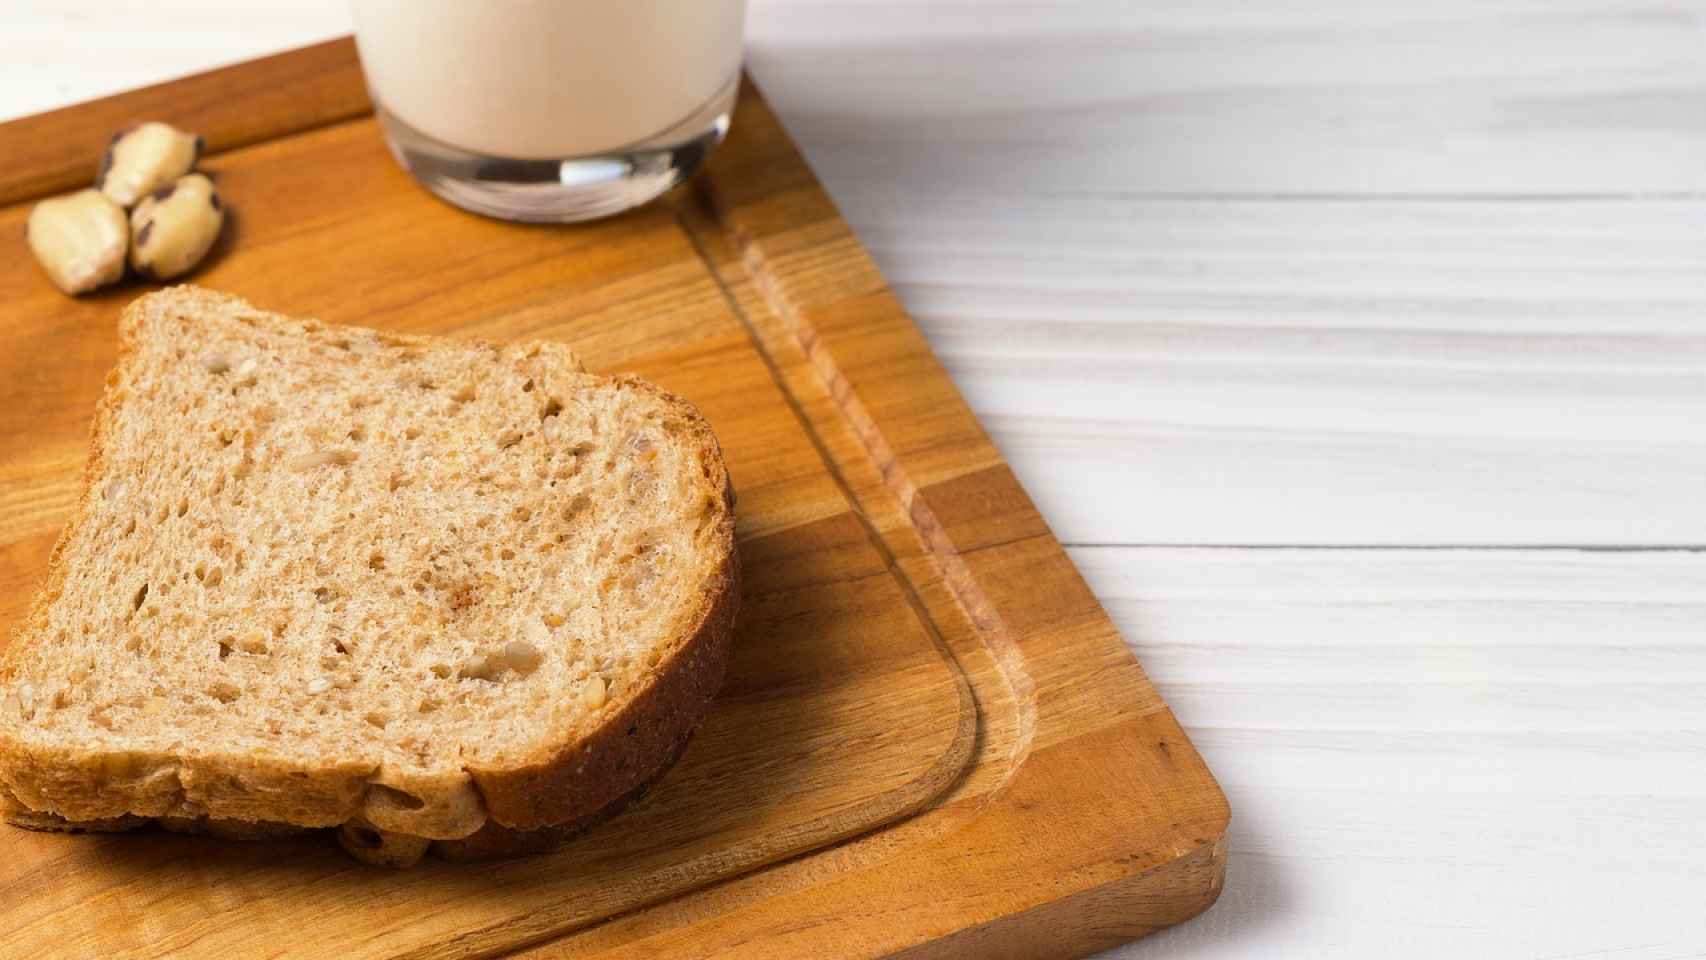 Cuidado con el pan y la leche: quizá sean menos saludables de lo que parecen.